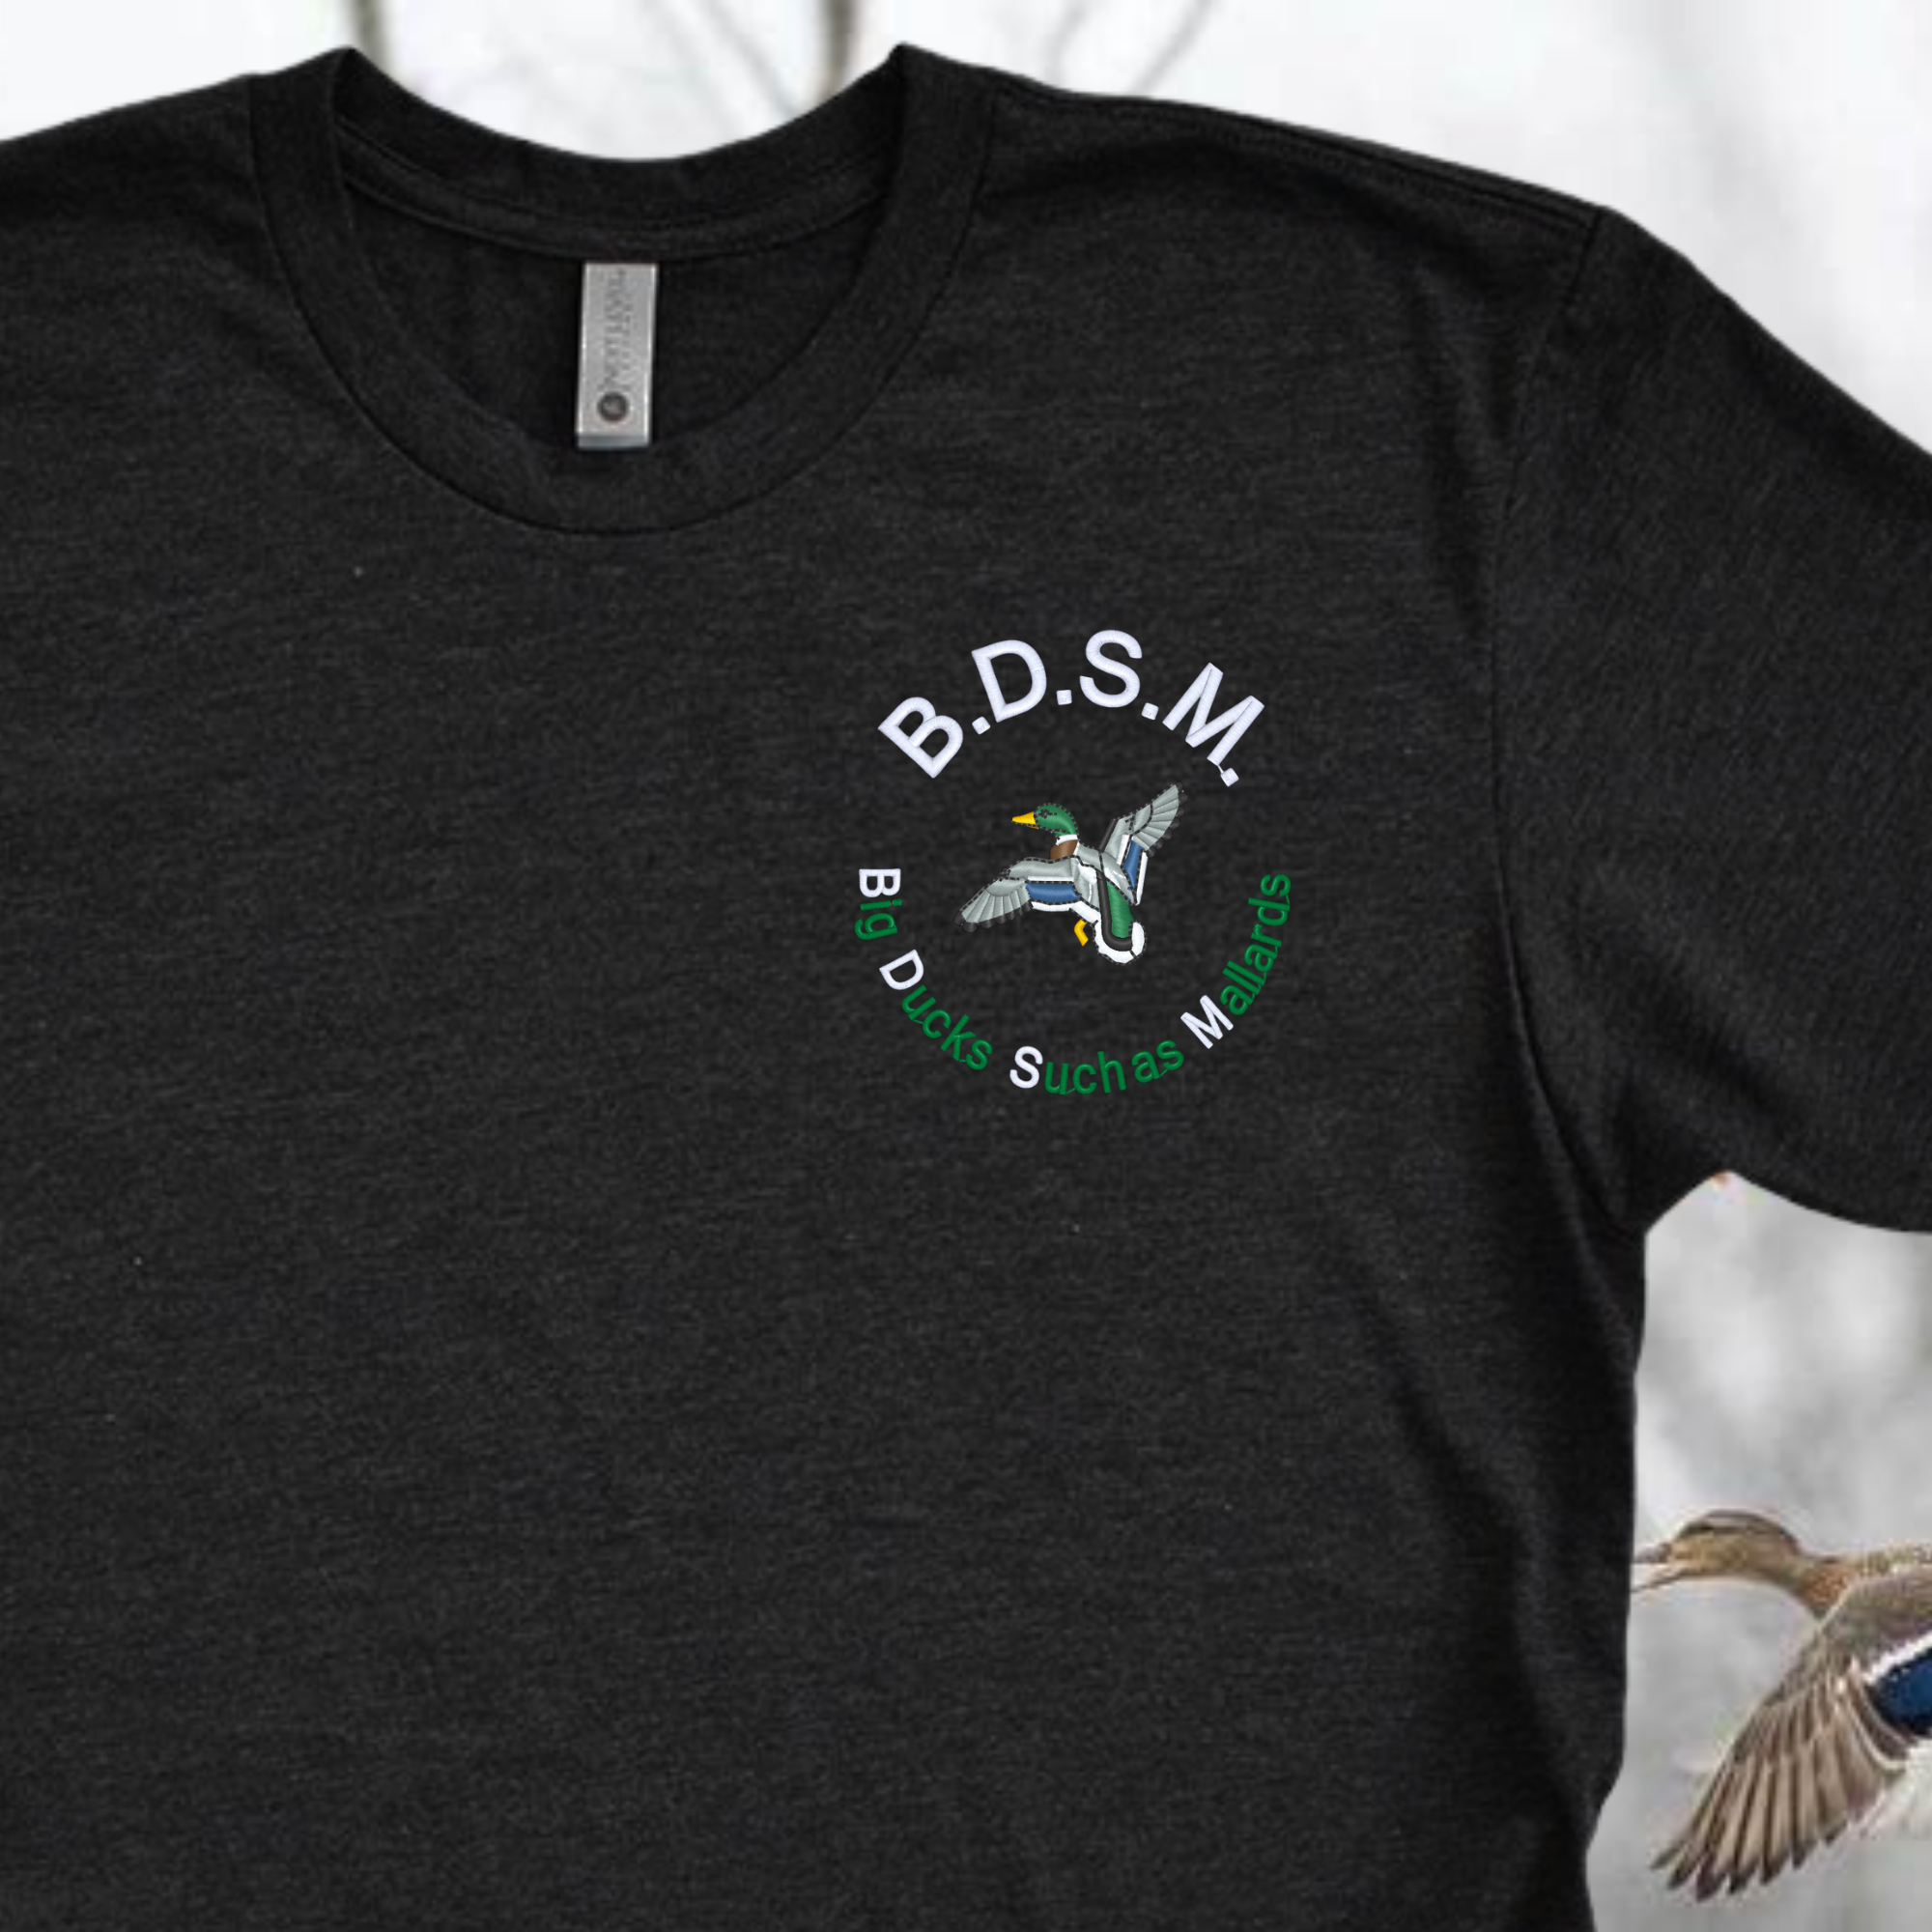 Big Ducks Such as Mallards BDSM Embroidered Tee Shirt, Unisex